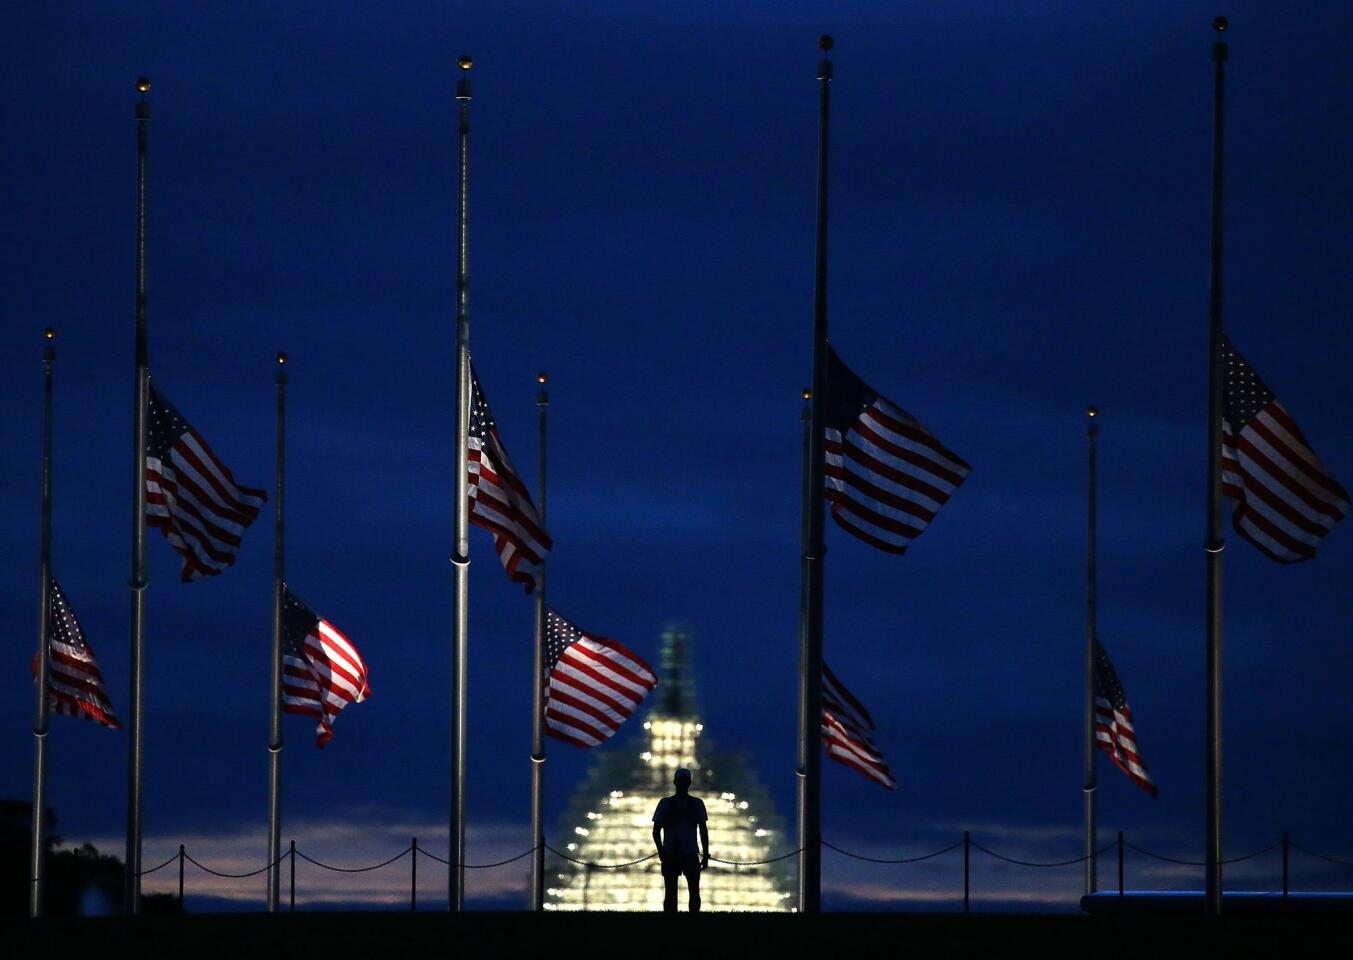 9/11 memorial observances